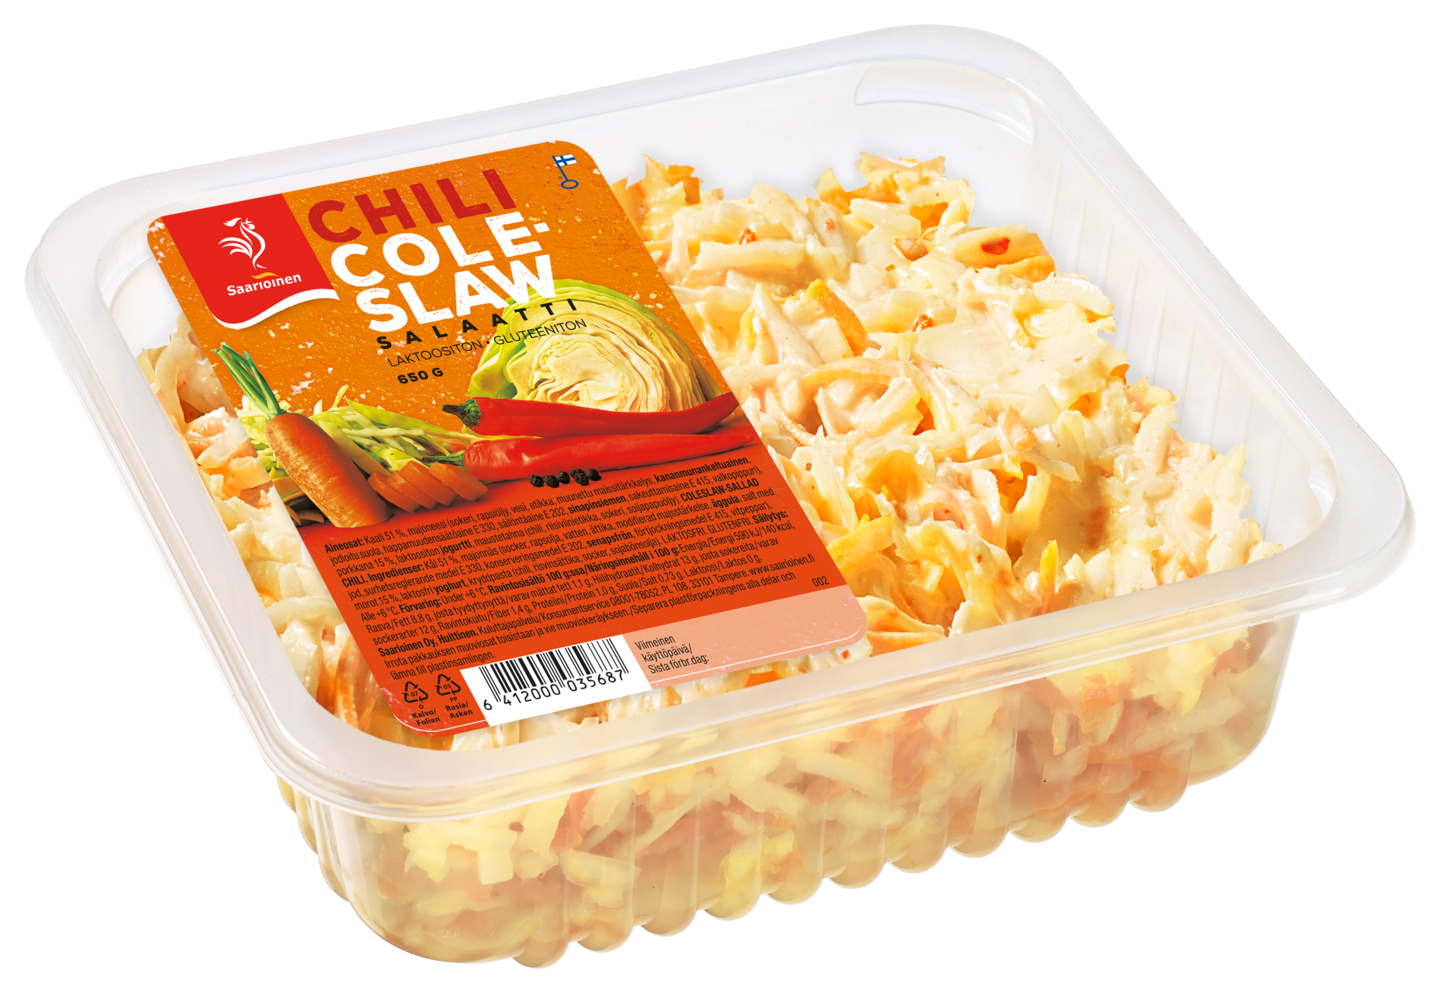 Saarioinen coleslaw-salaatti chili 650g | K-Ruoka Verkkokauppa